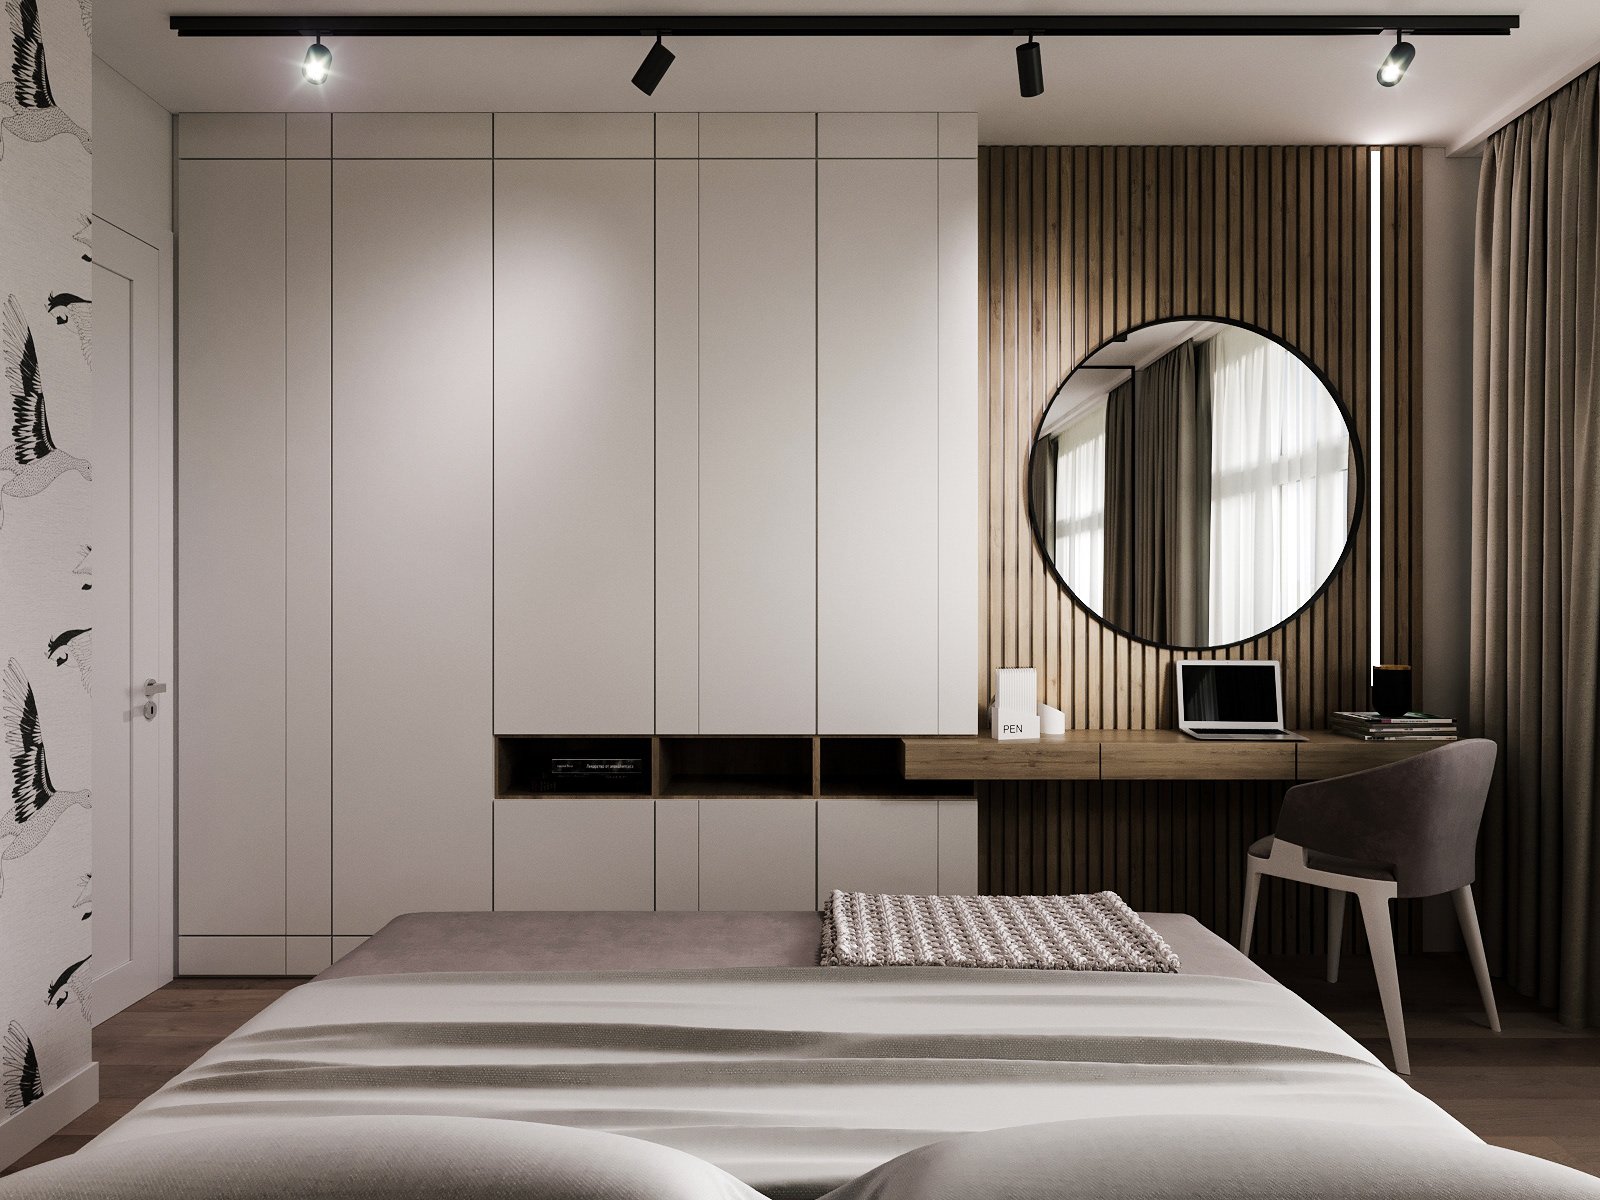 Современный дизайн шкафов для спальни